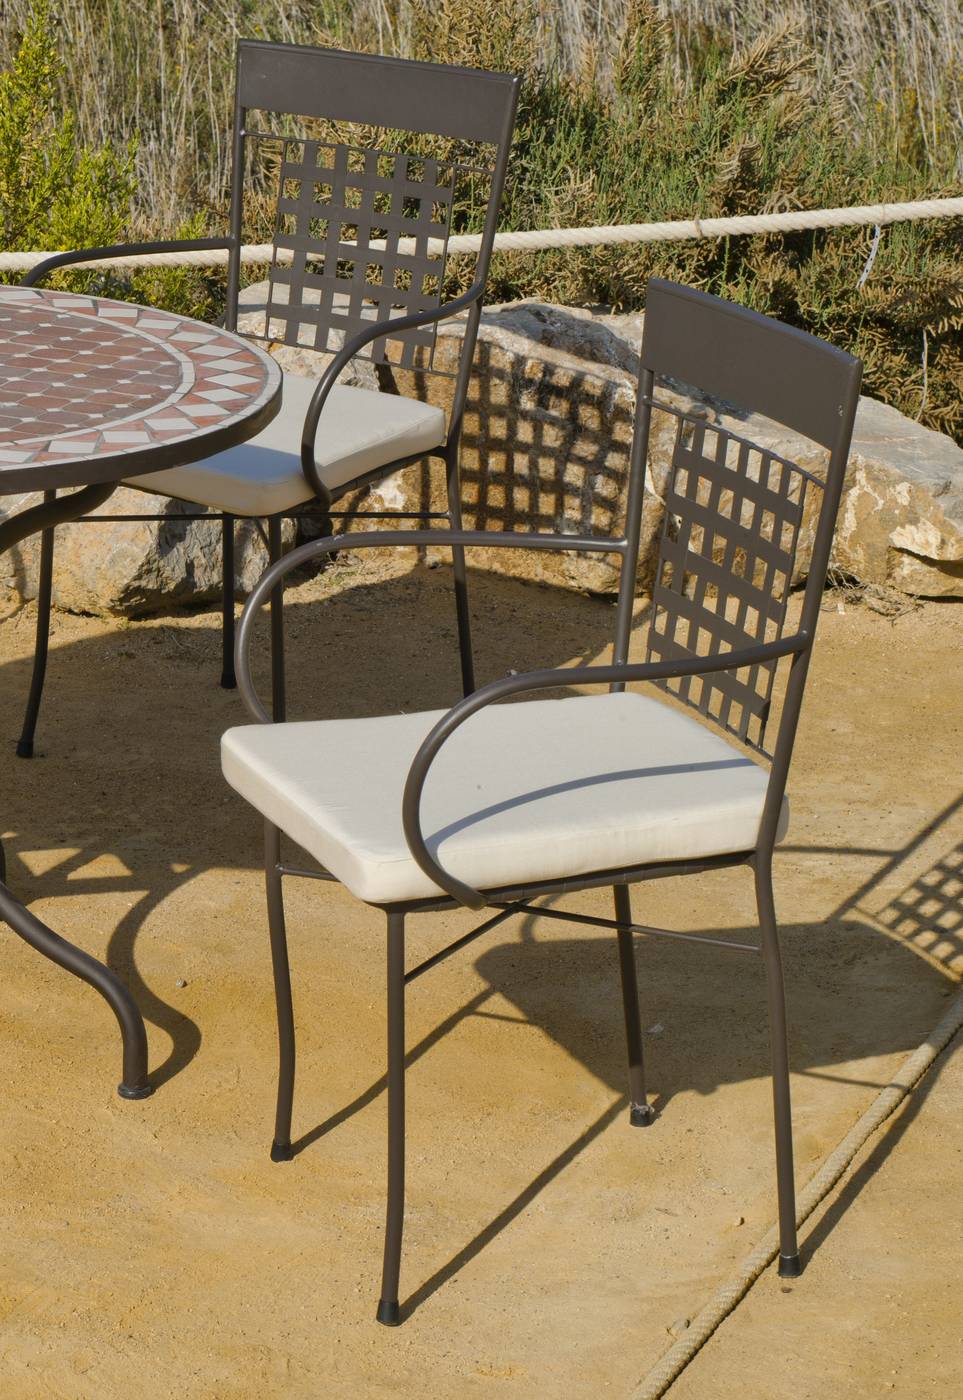 Conjunto Mosaico Belice-Vigo 140-6 - Conjunto para jardín y terraza de forja: 1 mesa con panel mosaico + 6 sillones de forja + 6 cojines.